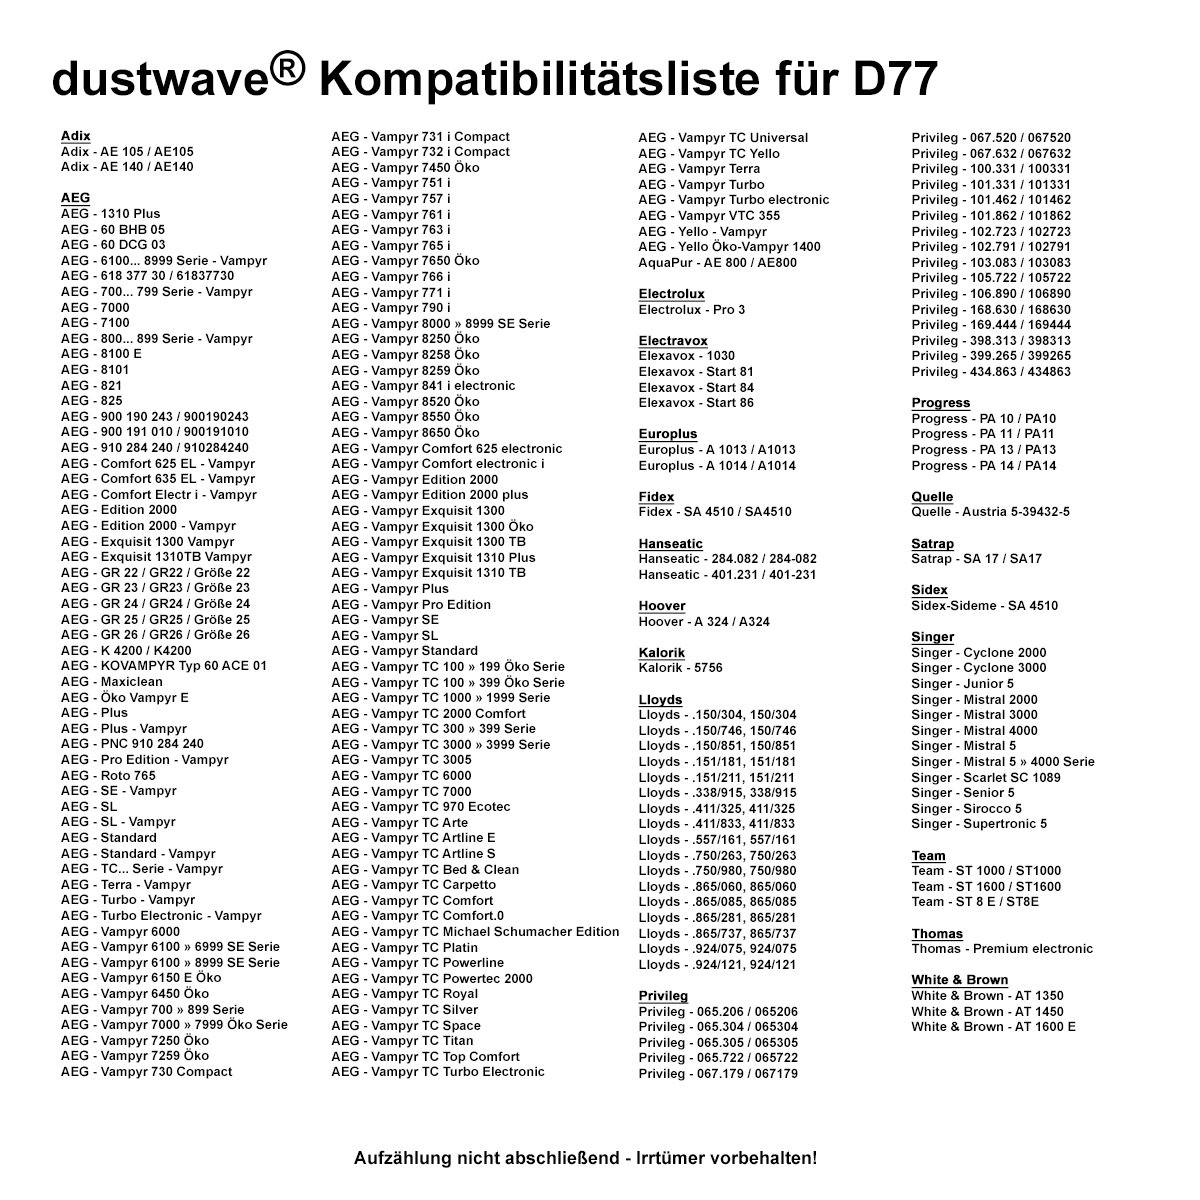 Dustwave® 1 Staubsaugerbeutel für AEG Vampyr 7500 Electronic - hocheffizient, mehrlagiges Mikrovlies mit Hygieneverschluss - Made in Germany